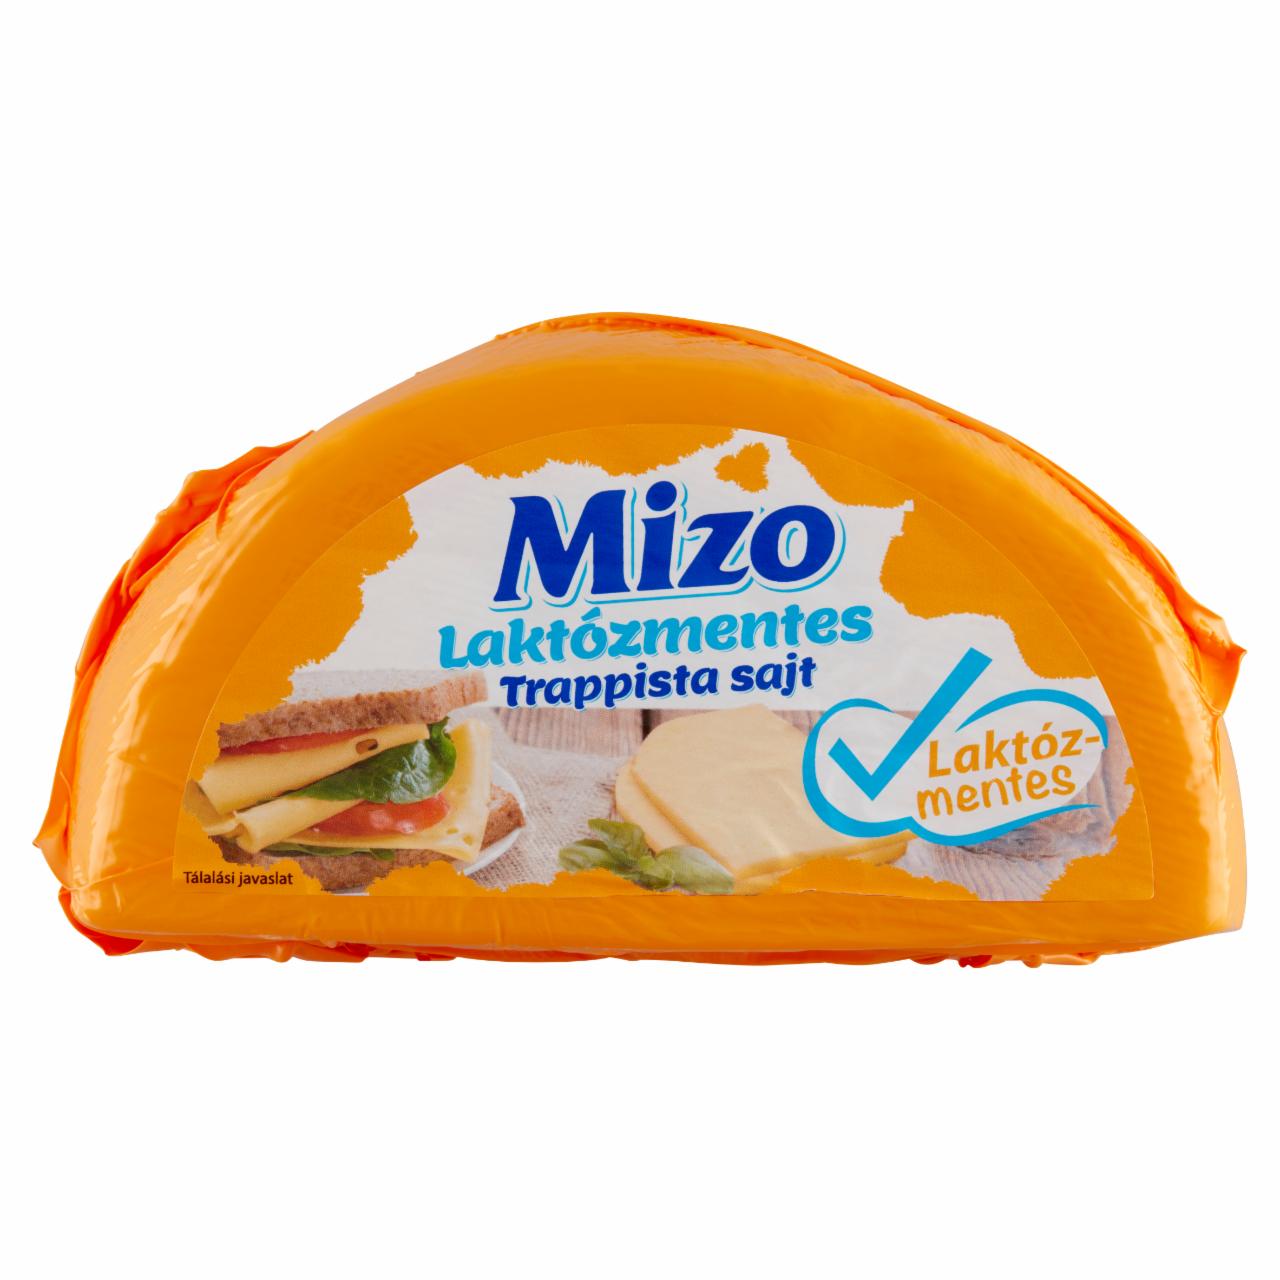 Képek - Mizo laktózmentes trappista sajt 700 g